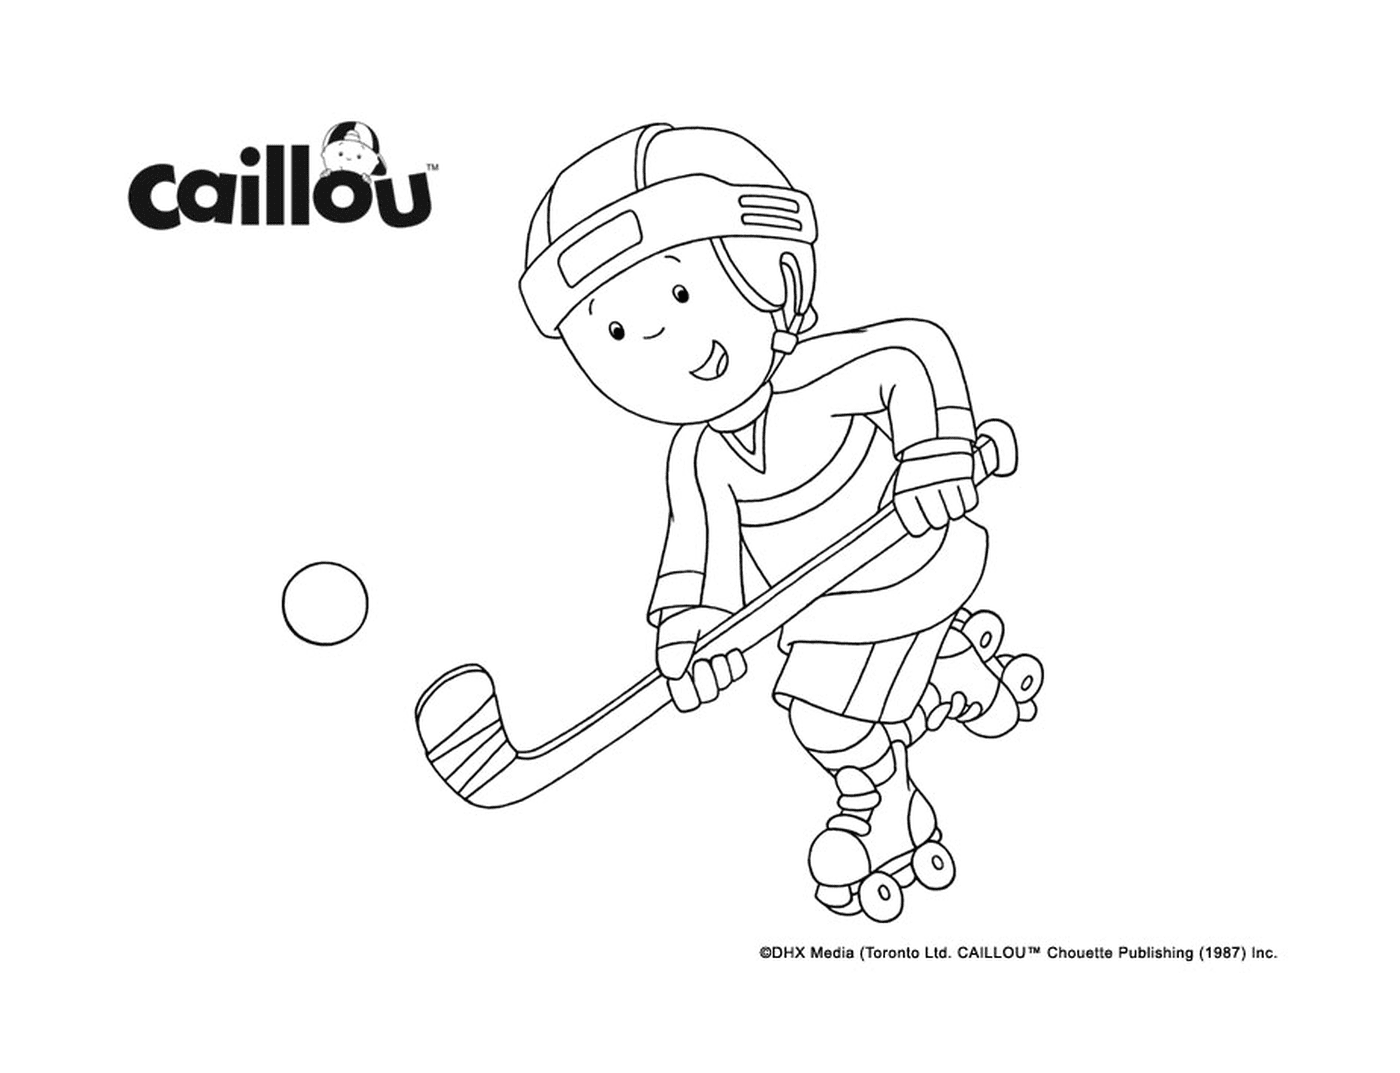  Caillou spielt Hockey für den Stanley Cup 